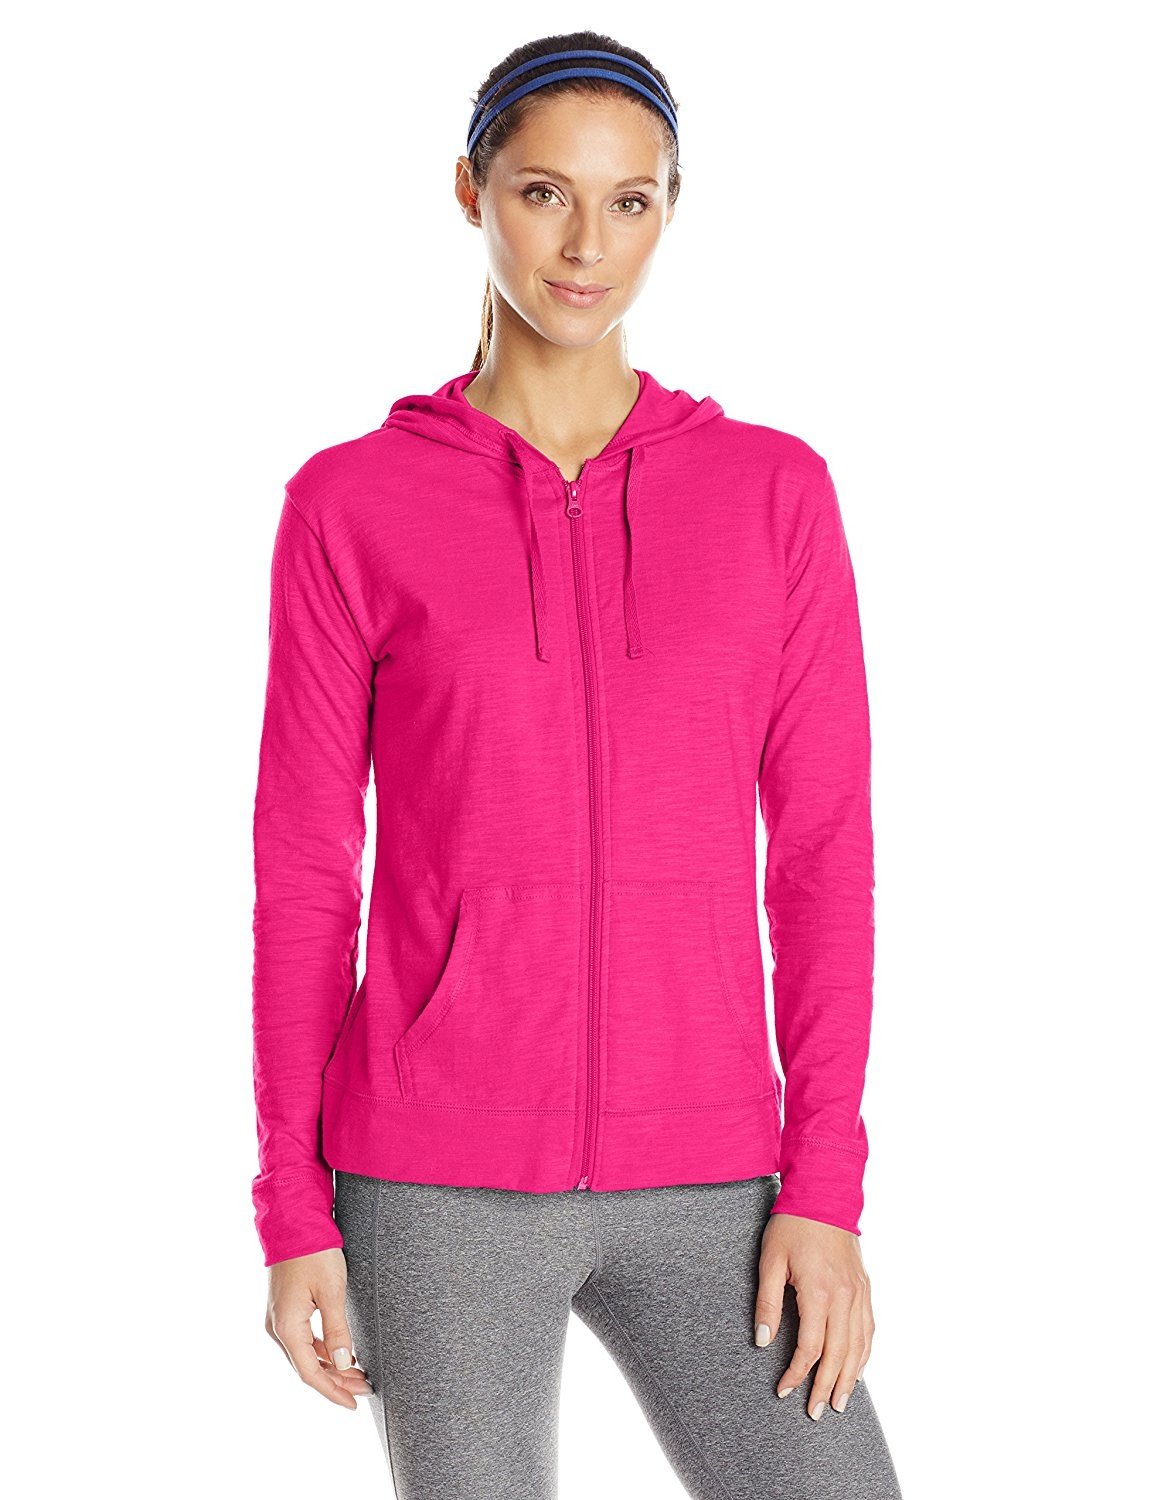 Hanes Women's Jersey Full Zip Hoodie COMFORTSOFT- 100% Cotton Purple/Pink/Gray